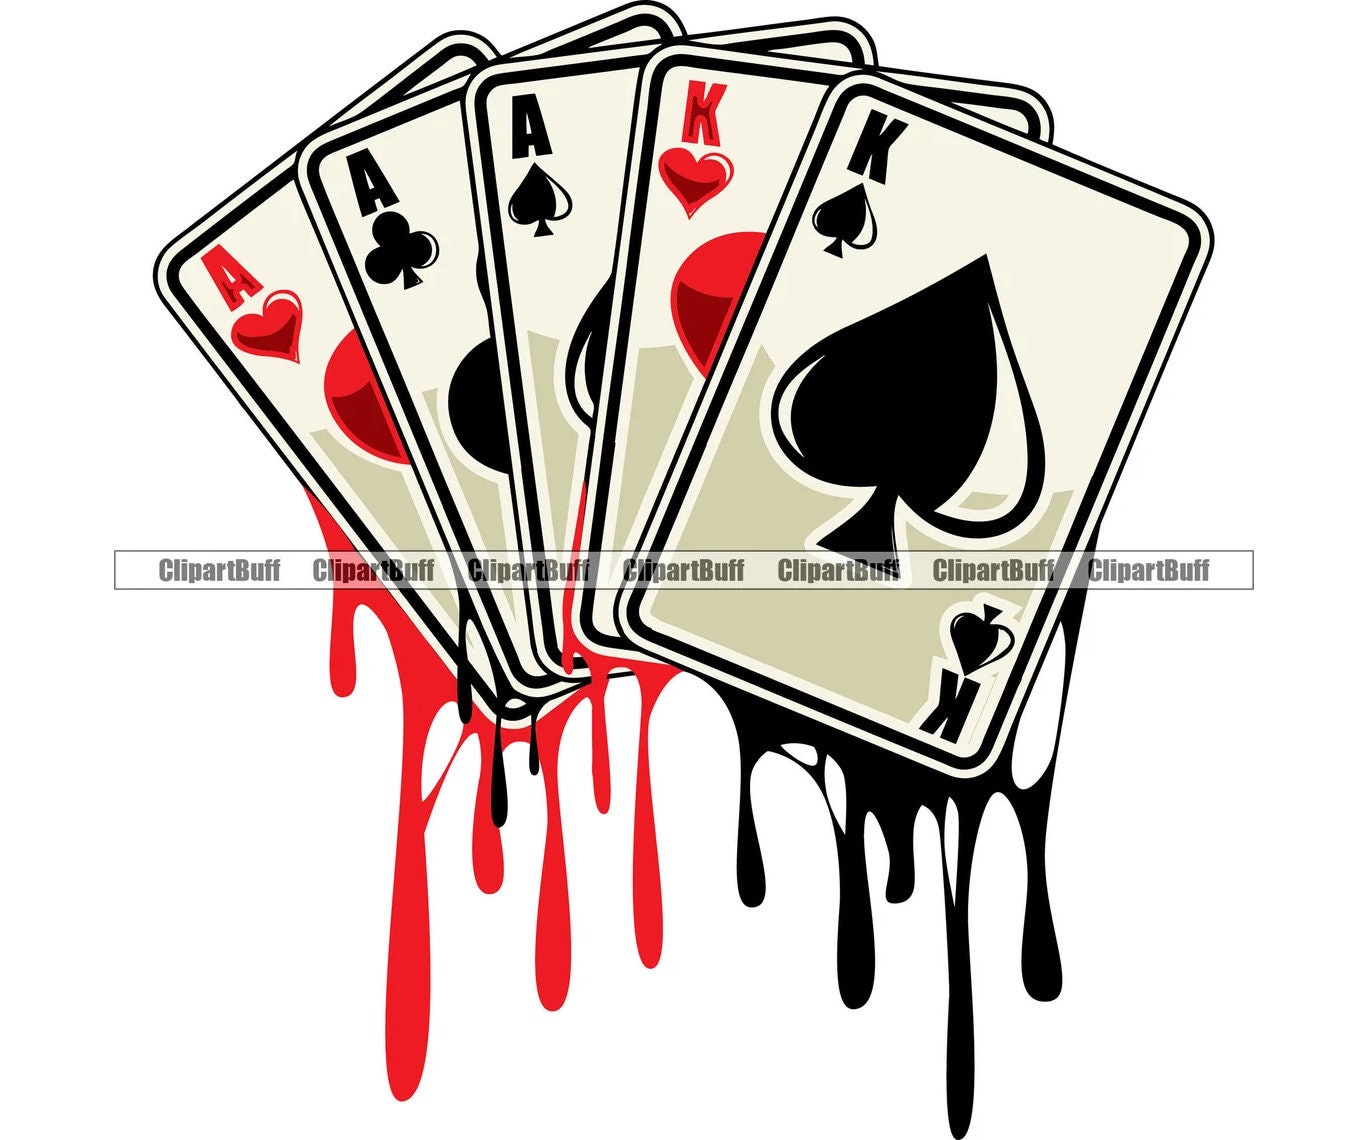 Quatre Cartes De Poker Aces Isolées. Carte à Jouer.